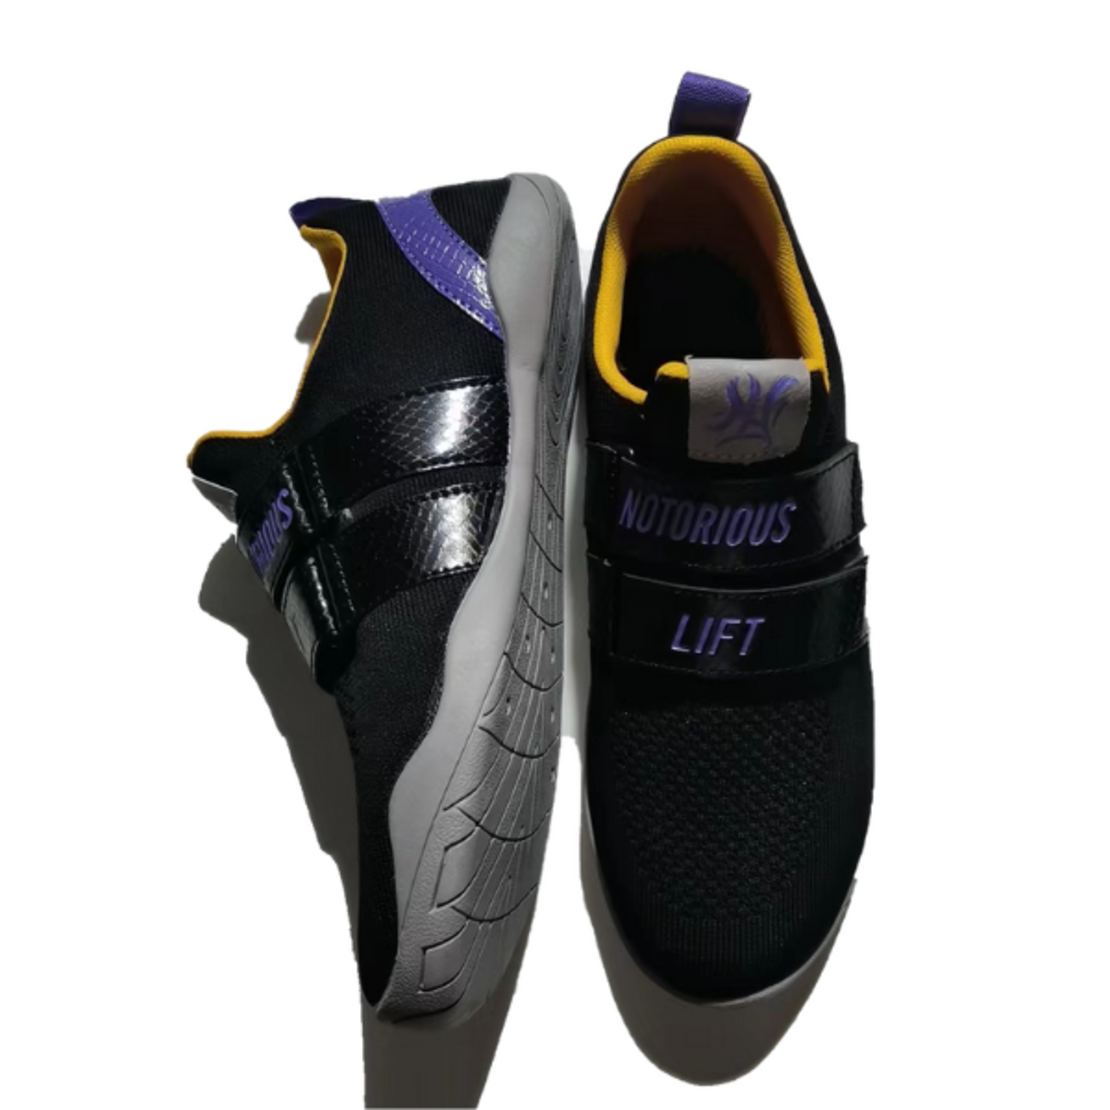 נעלי פאוורליפטינג NOTORIOUS LIFT NLG2X - BLACK MAMBA